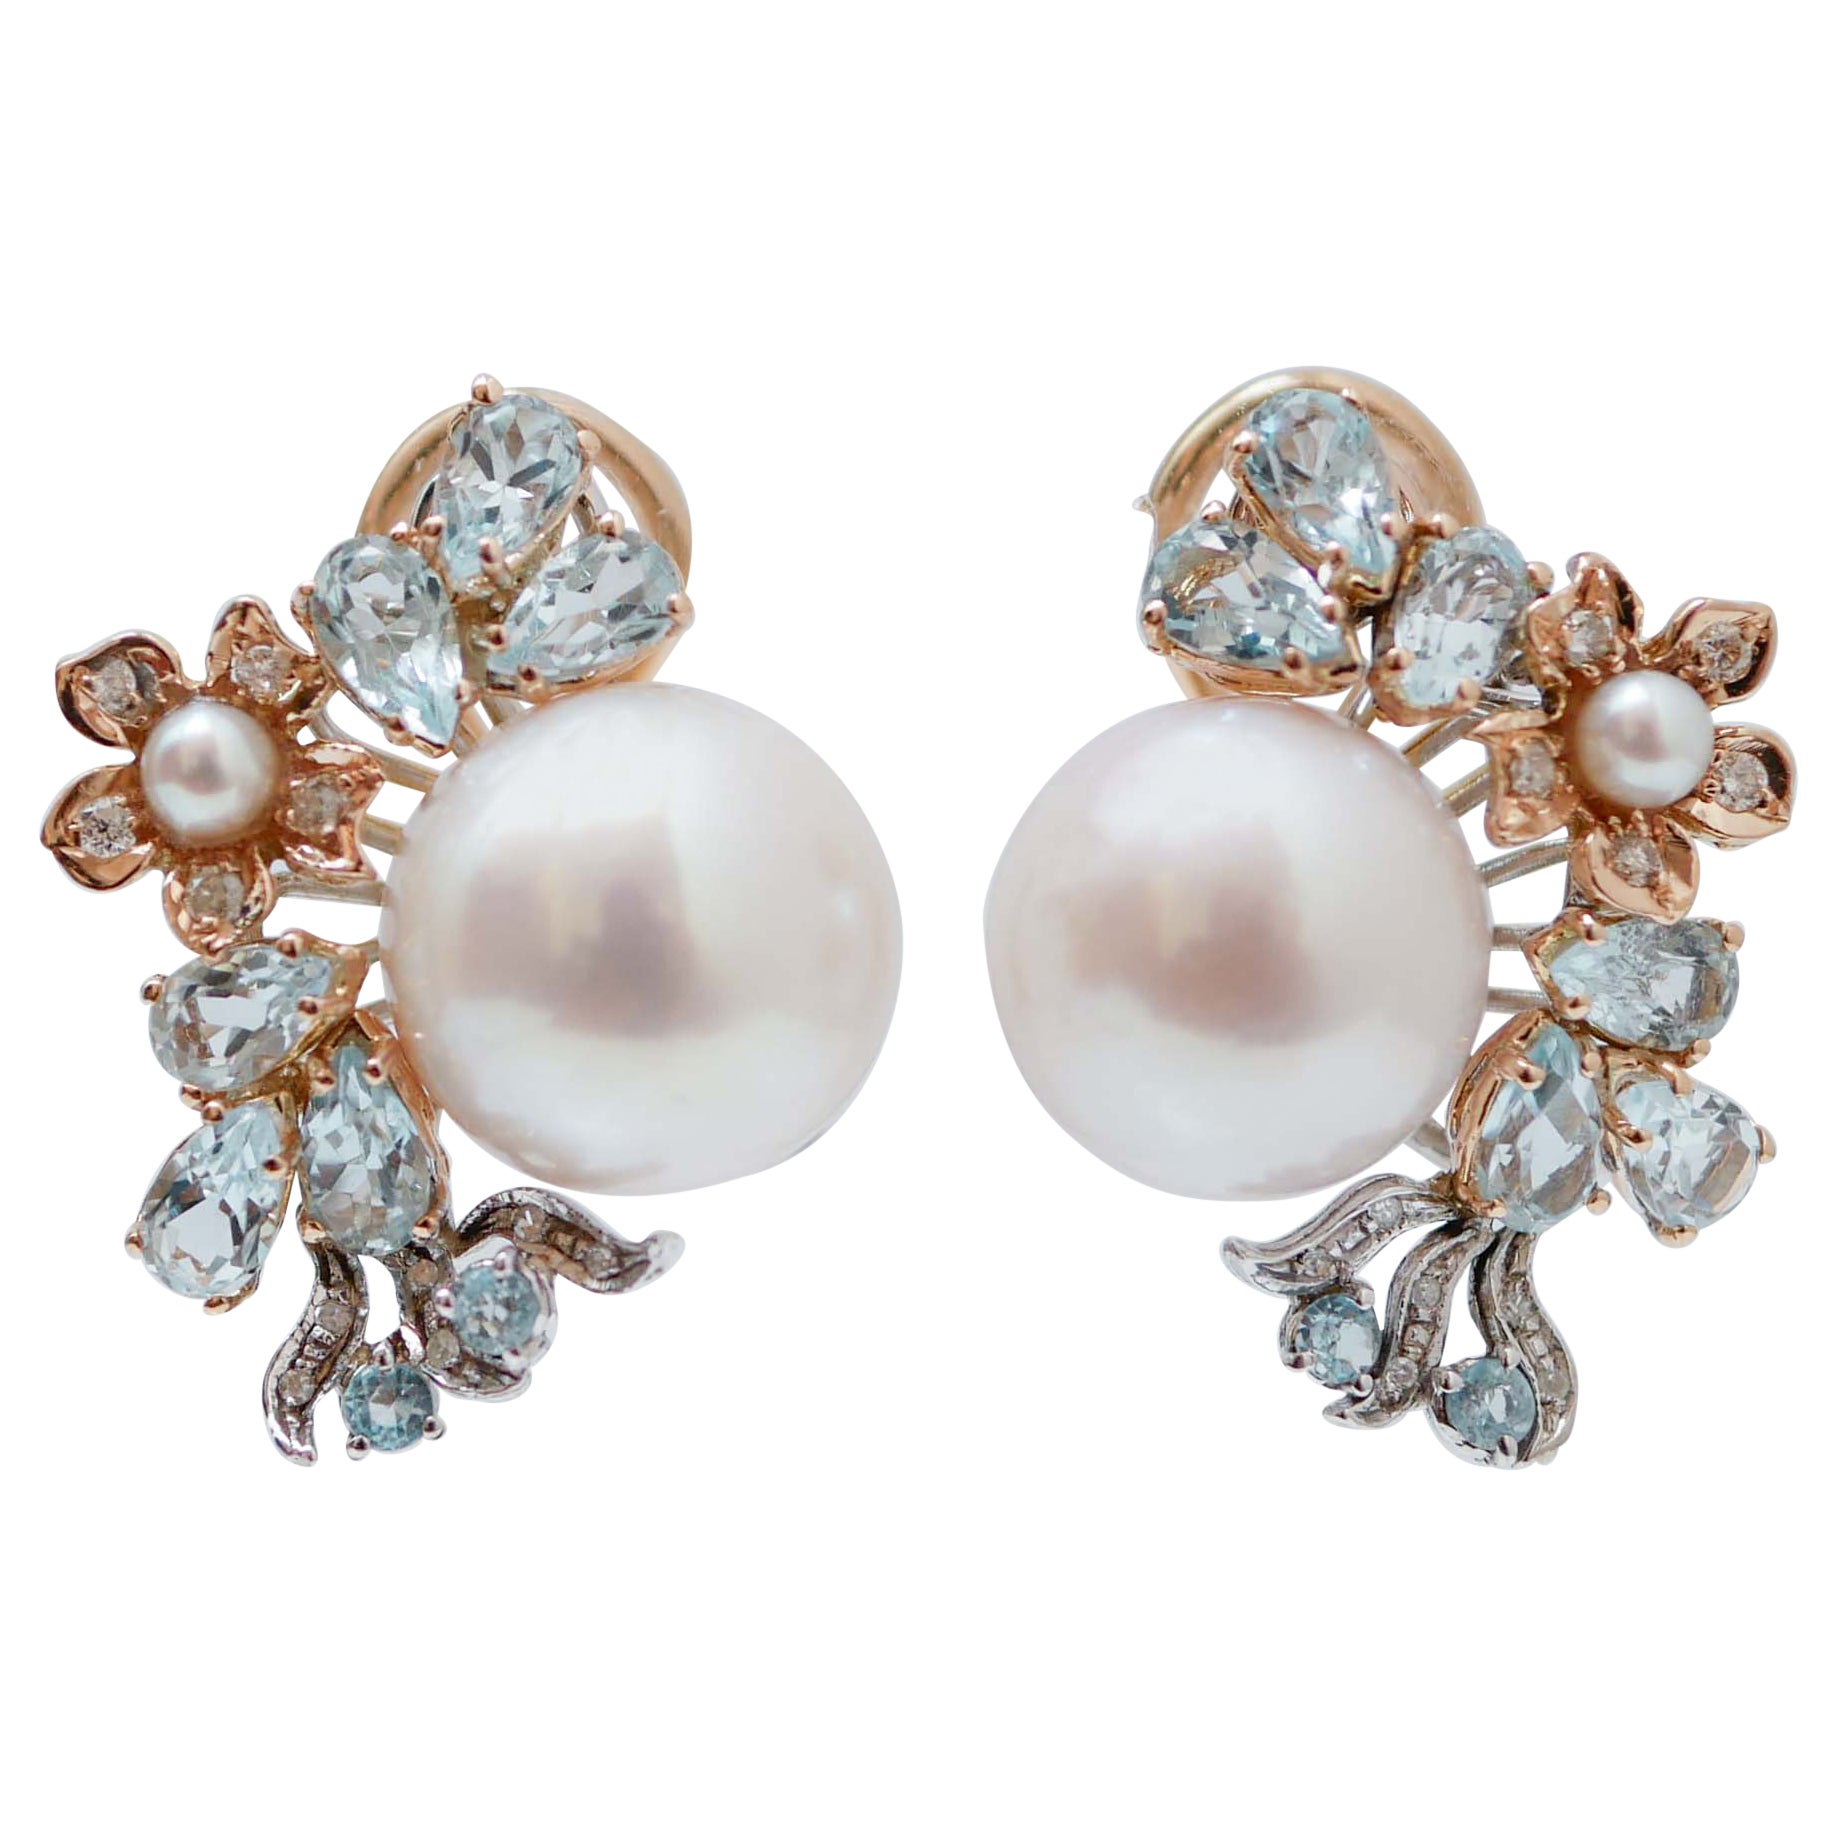 Boucles d'oreilles en or rose et blanc 14 carats avec perles, topaze et diamants